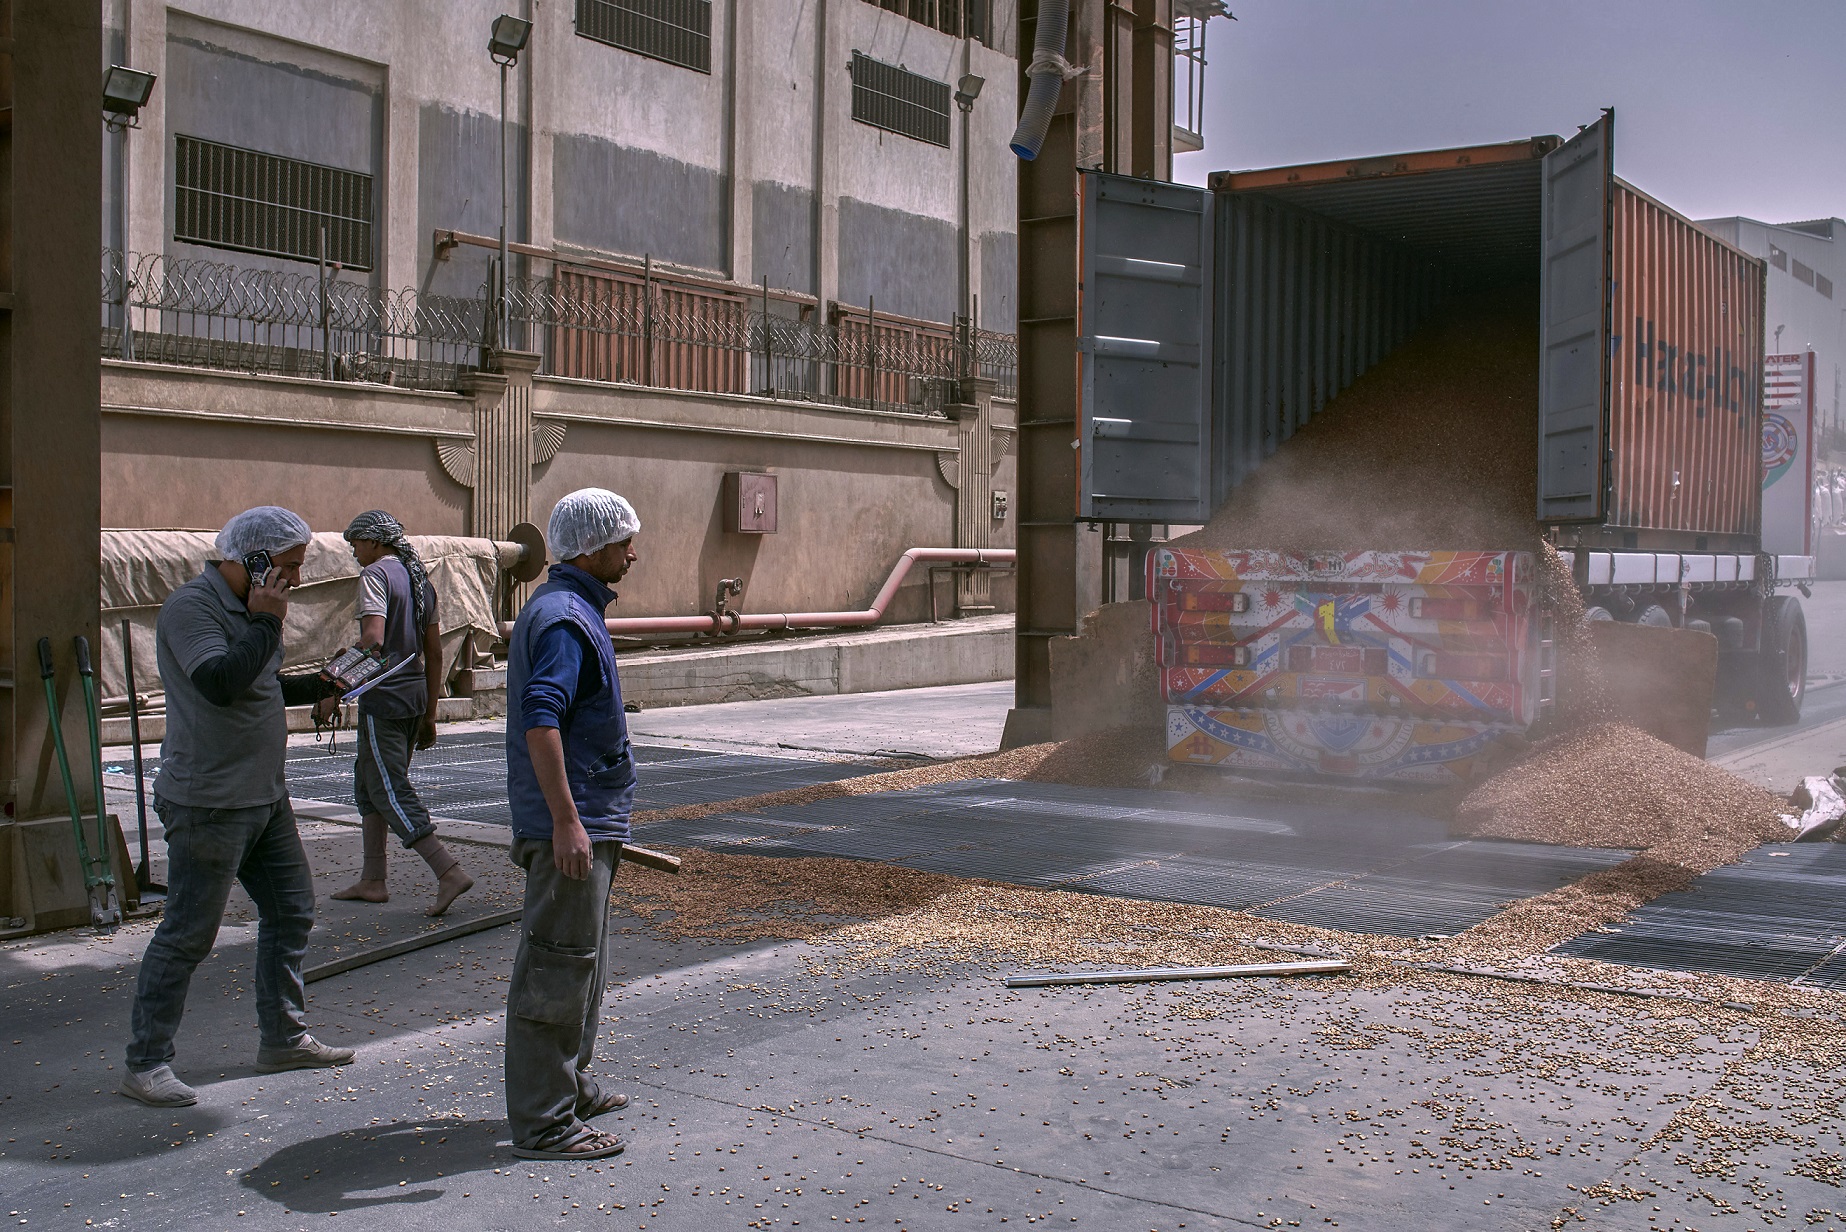 Un conteneur d’expédition contenant 25 tonnes de fèves est ouvert et des millions de graines sont déversées dans un silo, dans la zone industrielle d’al-Obor au Caire, le 9 avril 2019 (MEE/Hamada Elrasam)